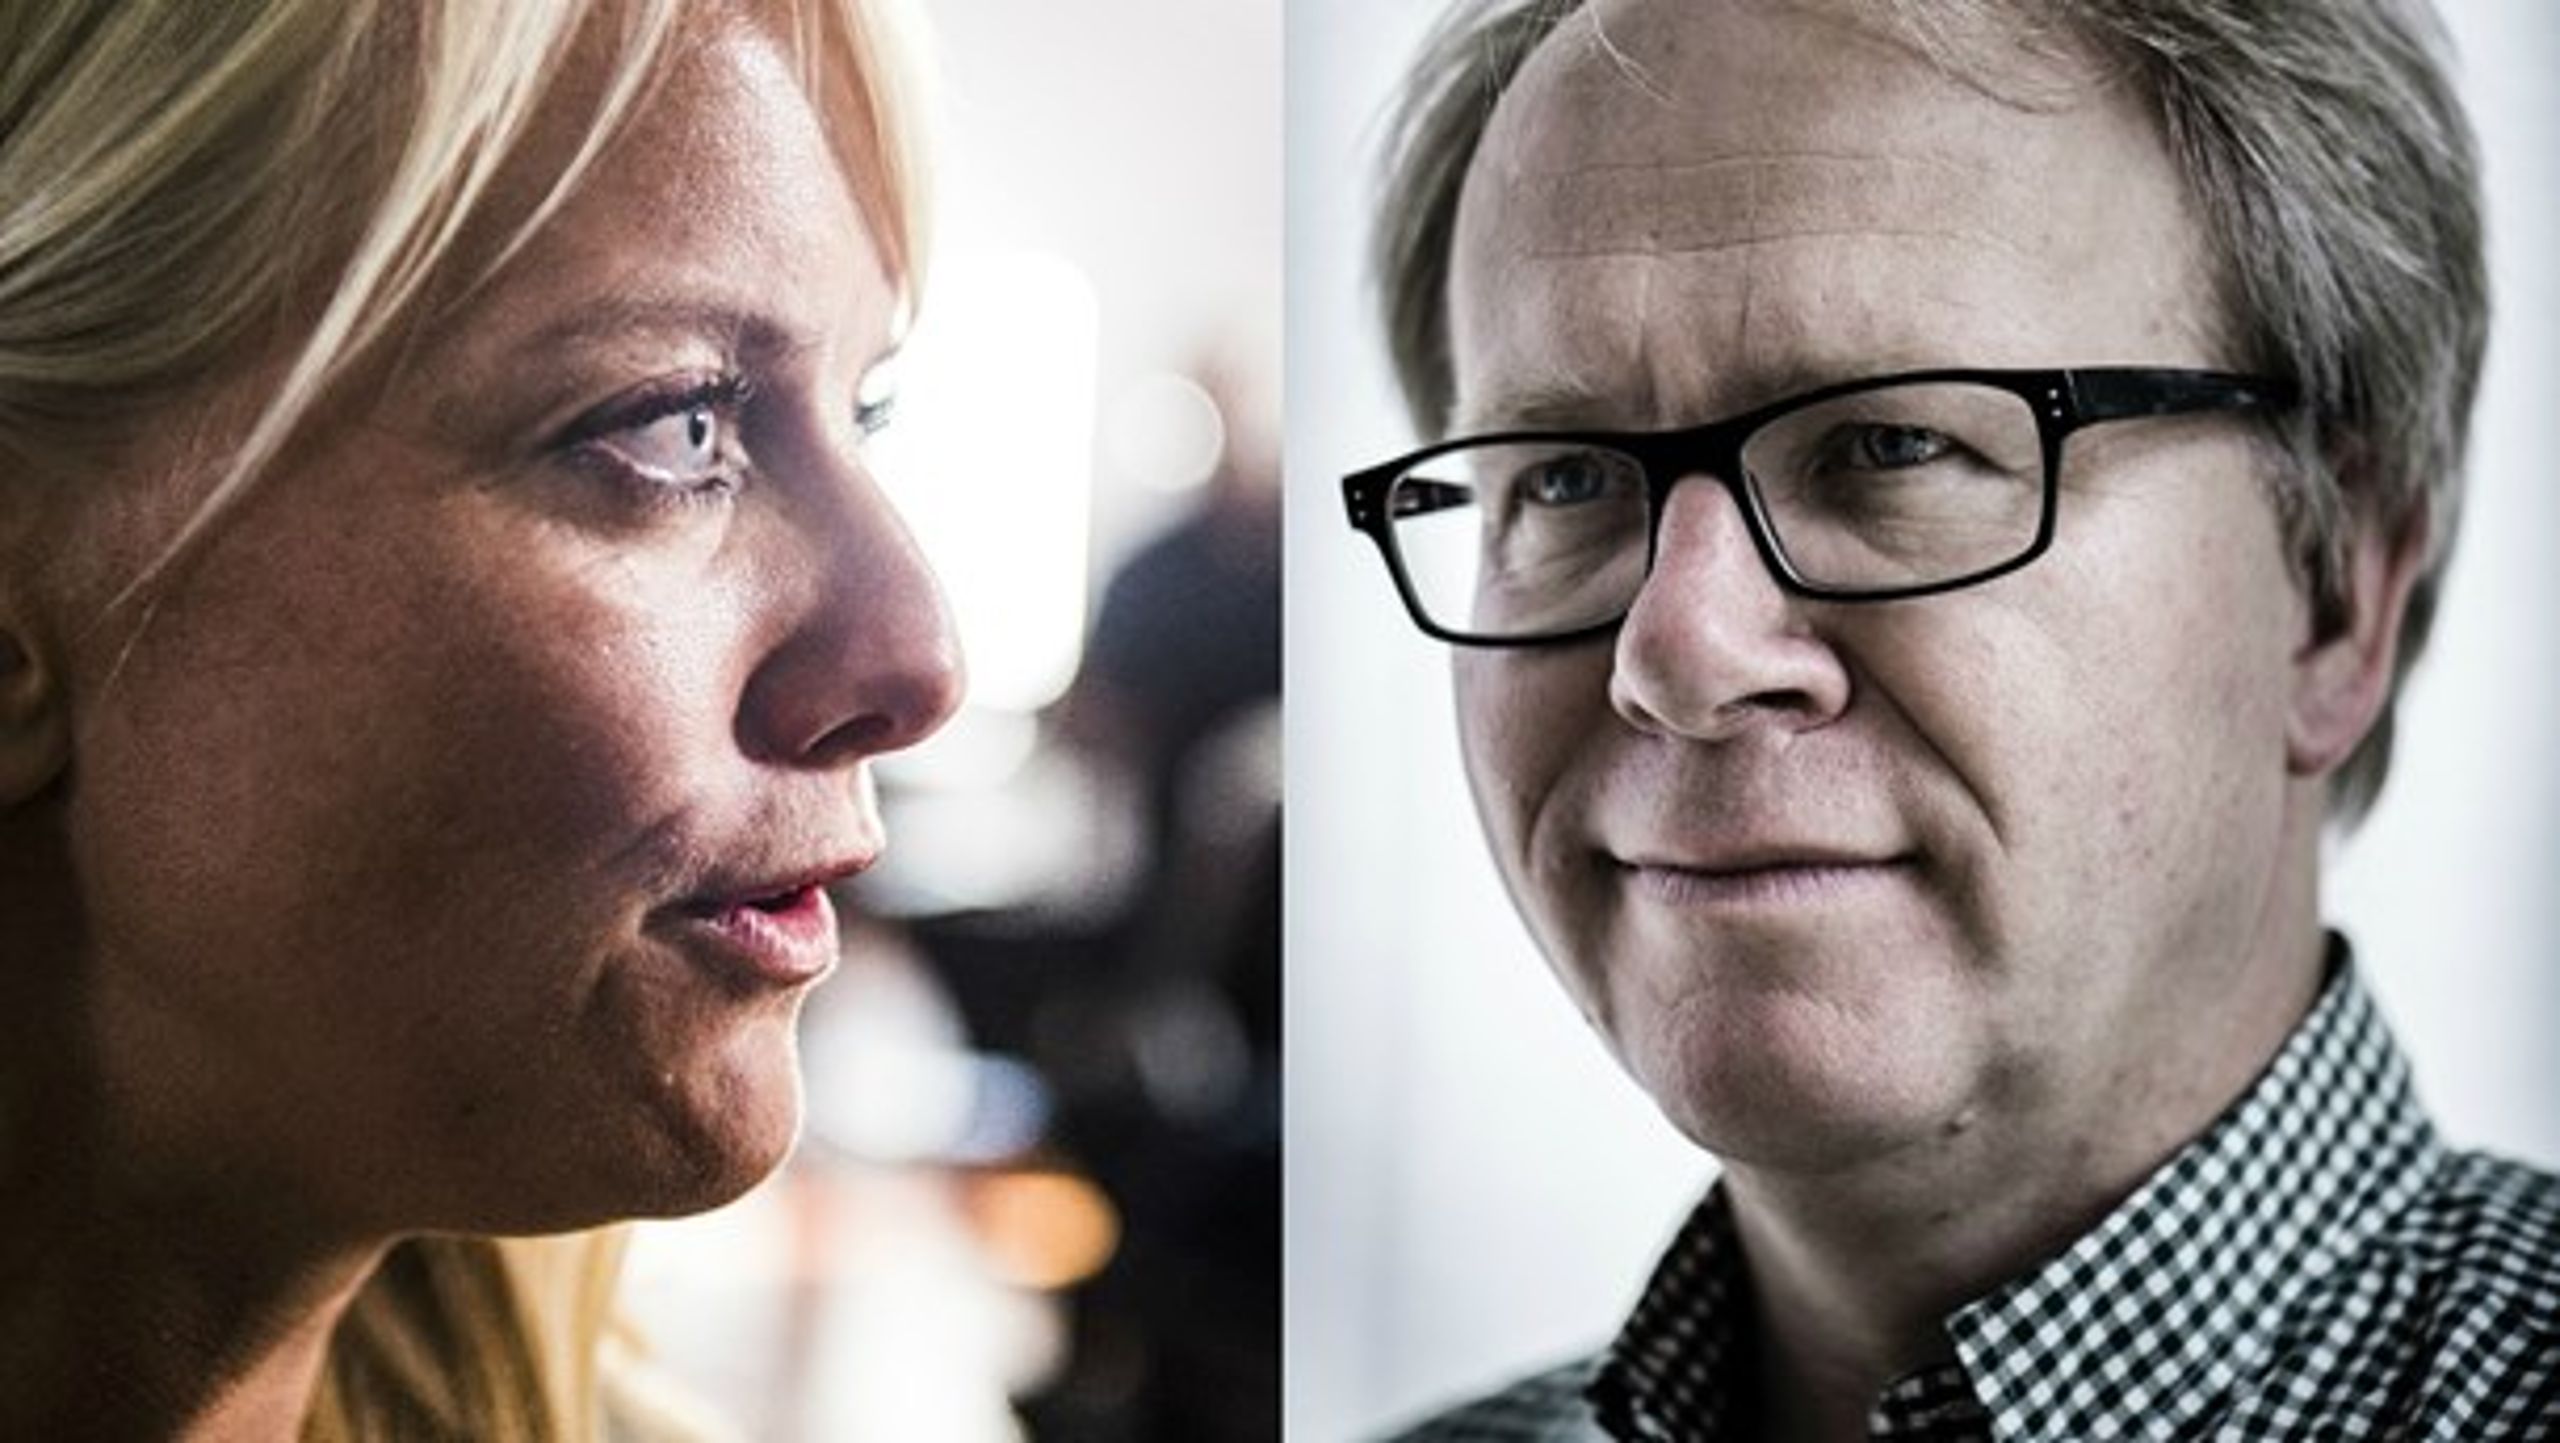 Det er langt over stregen, når Pernille Vermund sammenligner David Trads med en stikker, mener Lars Aslan.